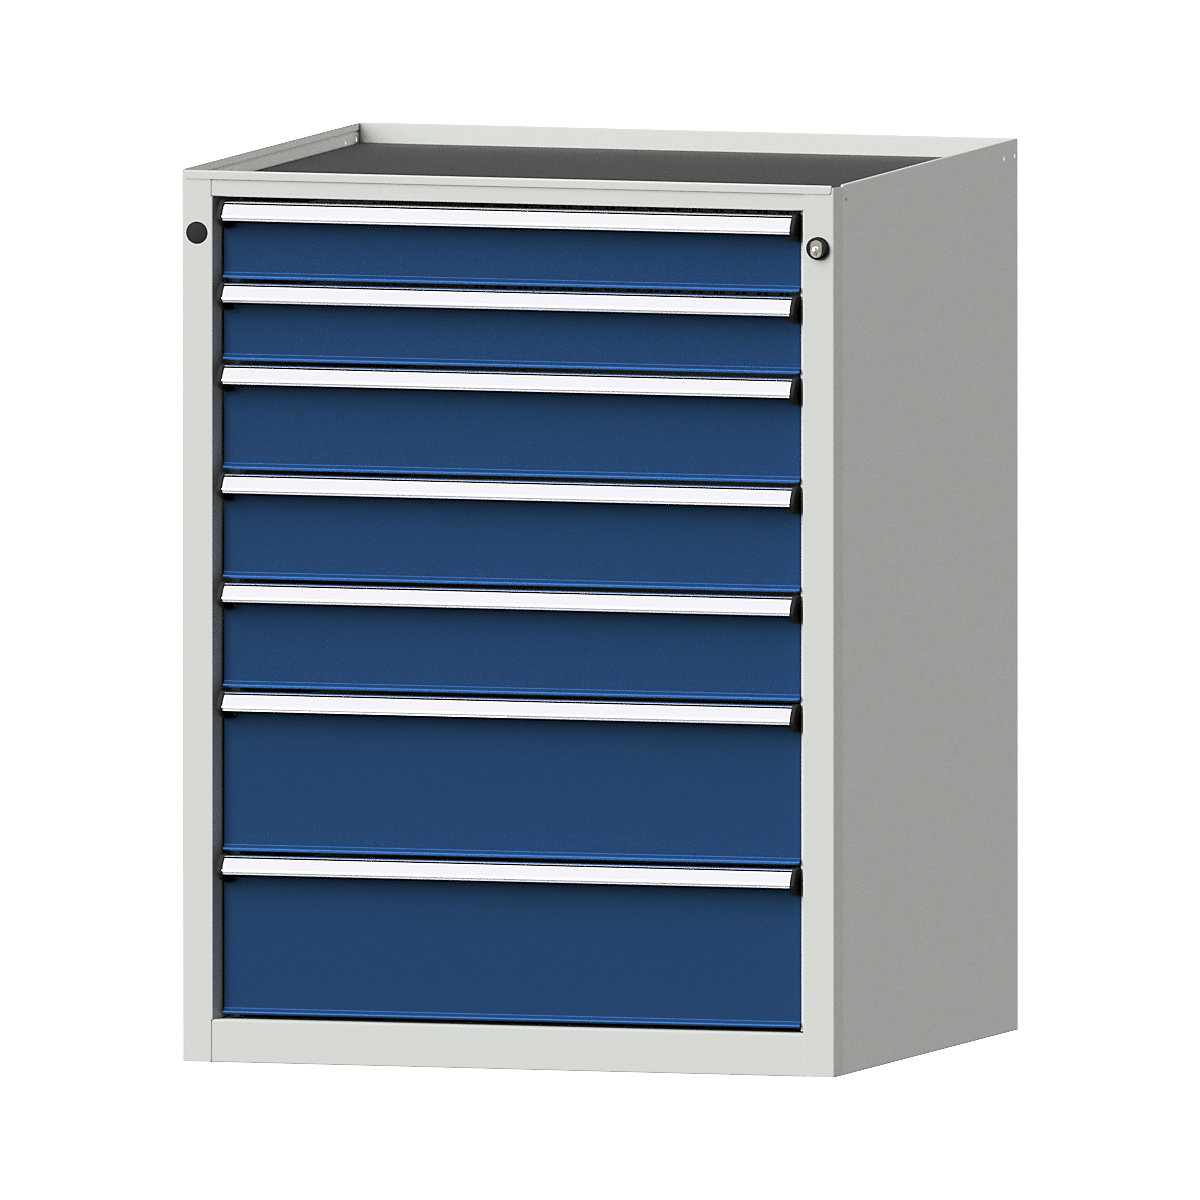 Zásuvková skříň – ANKE, š x h 760 x 675 mm, nosnost zásuvky 200 kg, 7 zásuvek, výška 980 mm, čelo hořcově modré